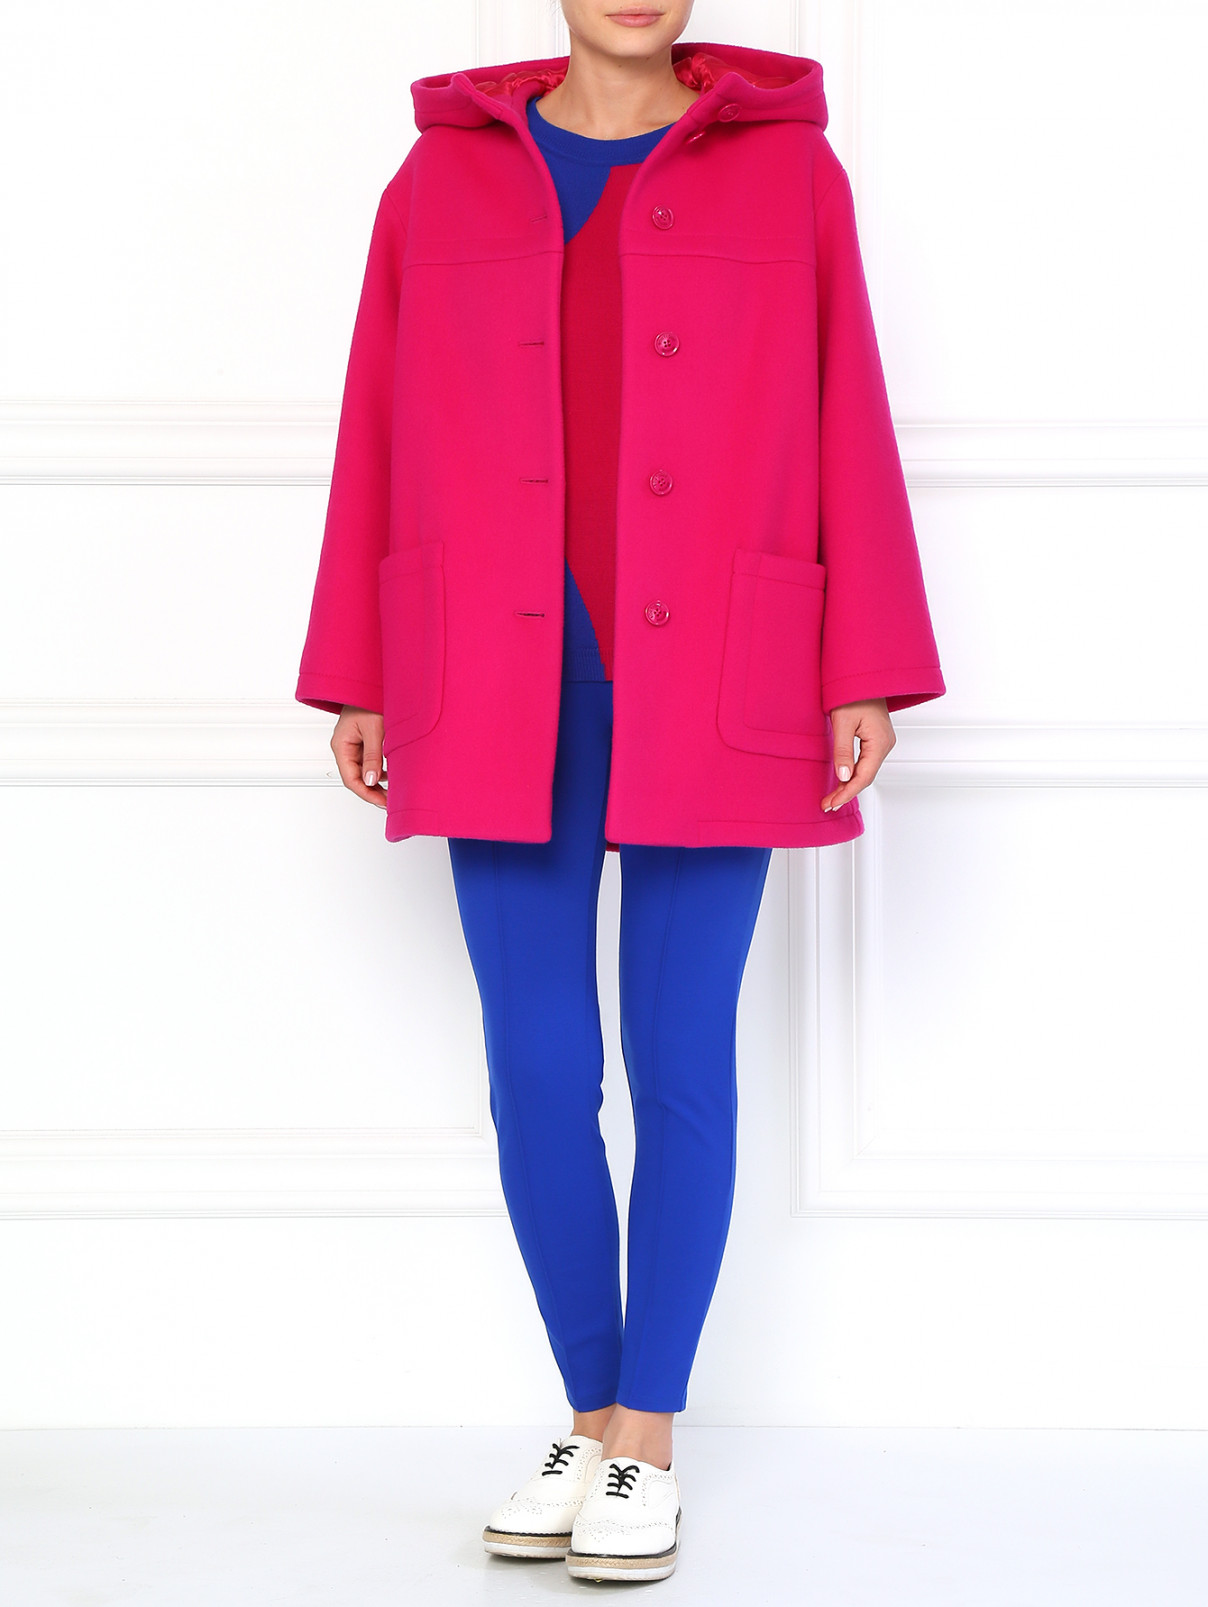 Шерстяное пальто А-образного силуэта с капюшоном Moschino Boutique  –  Модель Общий вид  – Цвет:  Фиолетовый